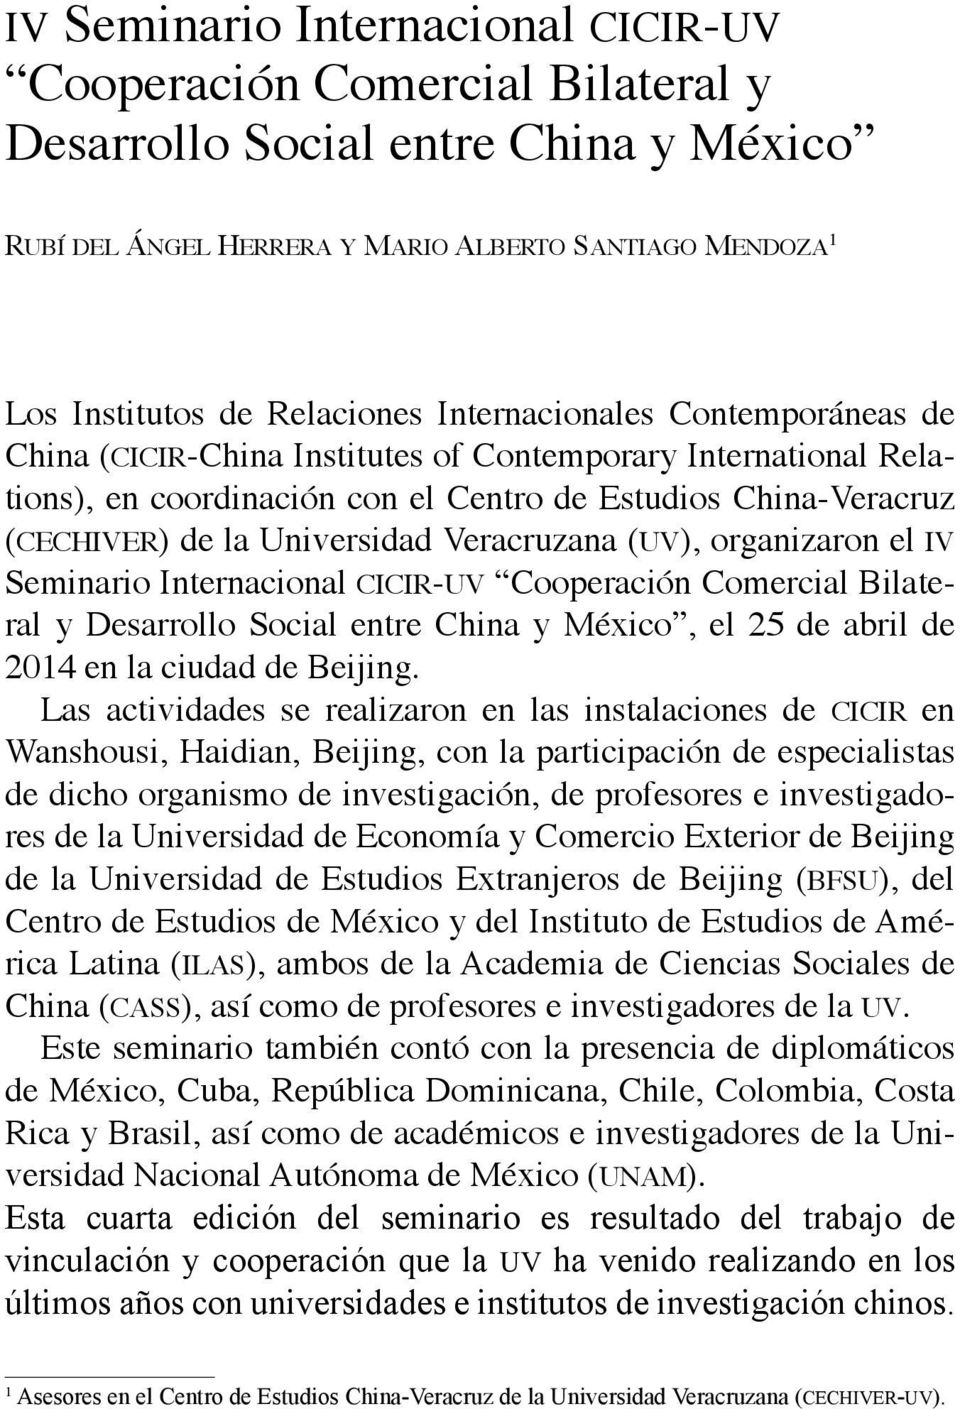 Veracruzana (uv), organizaron el iv Seminario Internacional cicir-uv Cooperación Comercial Bilateral y Desarrollo Social entre China y México, el 25 de abril de 2014 en la ciudad de Beijing.